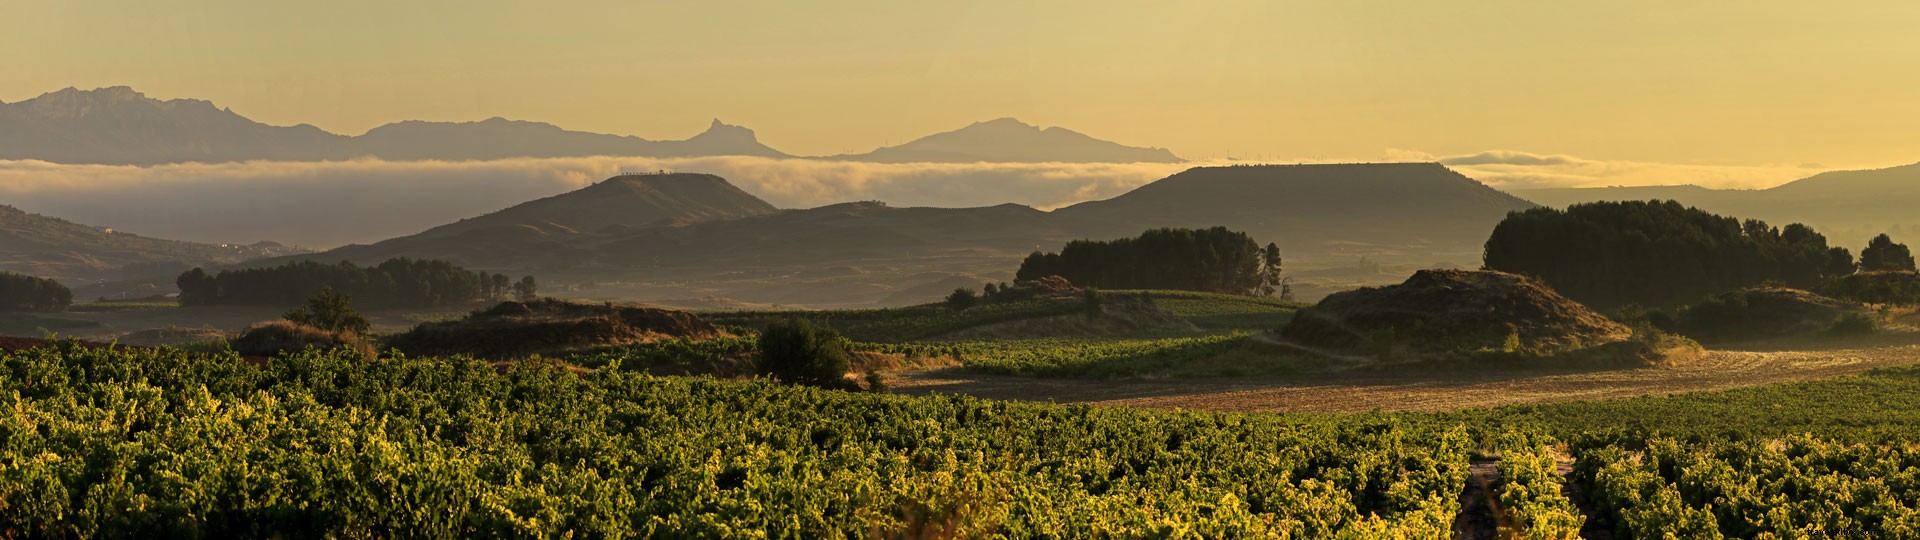 Esperienze indimenticabili gustando il vino a La Rioja 